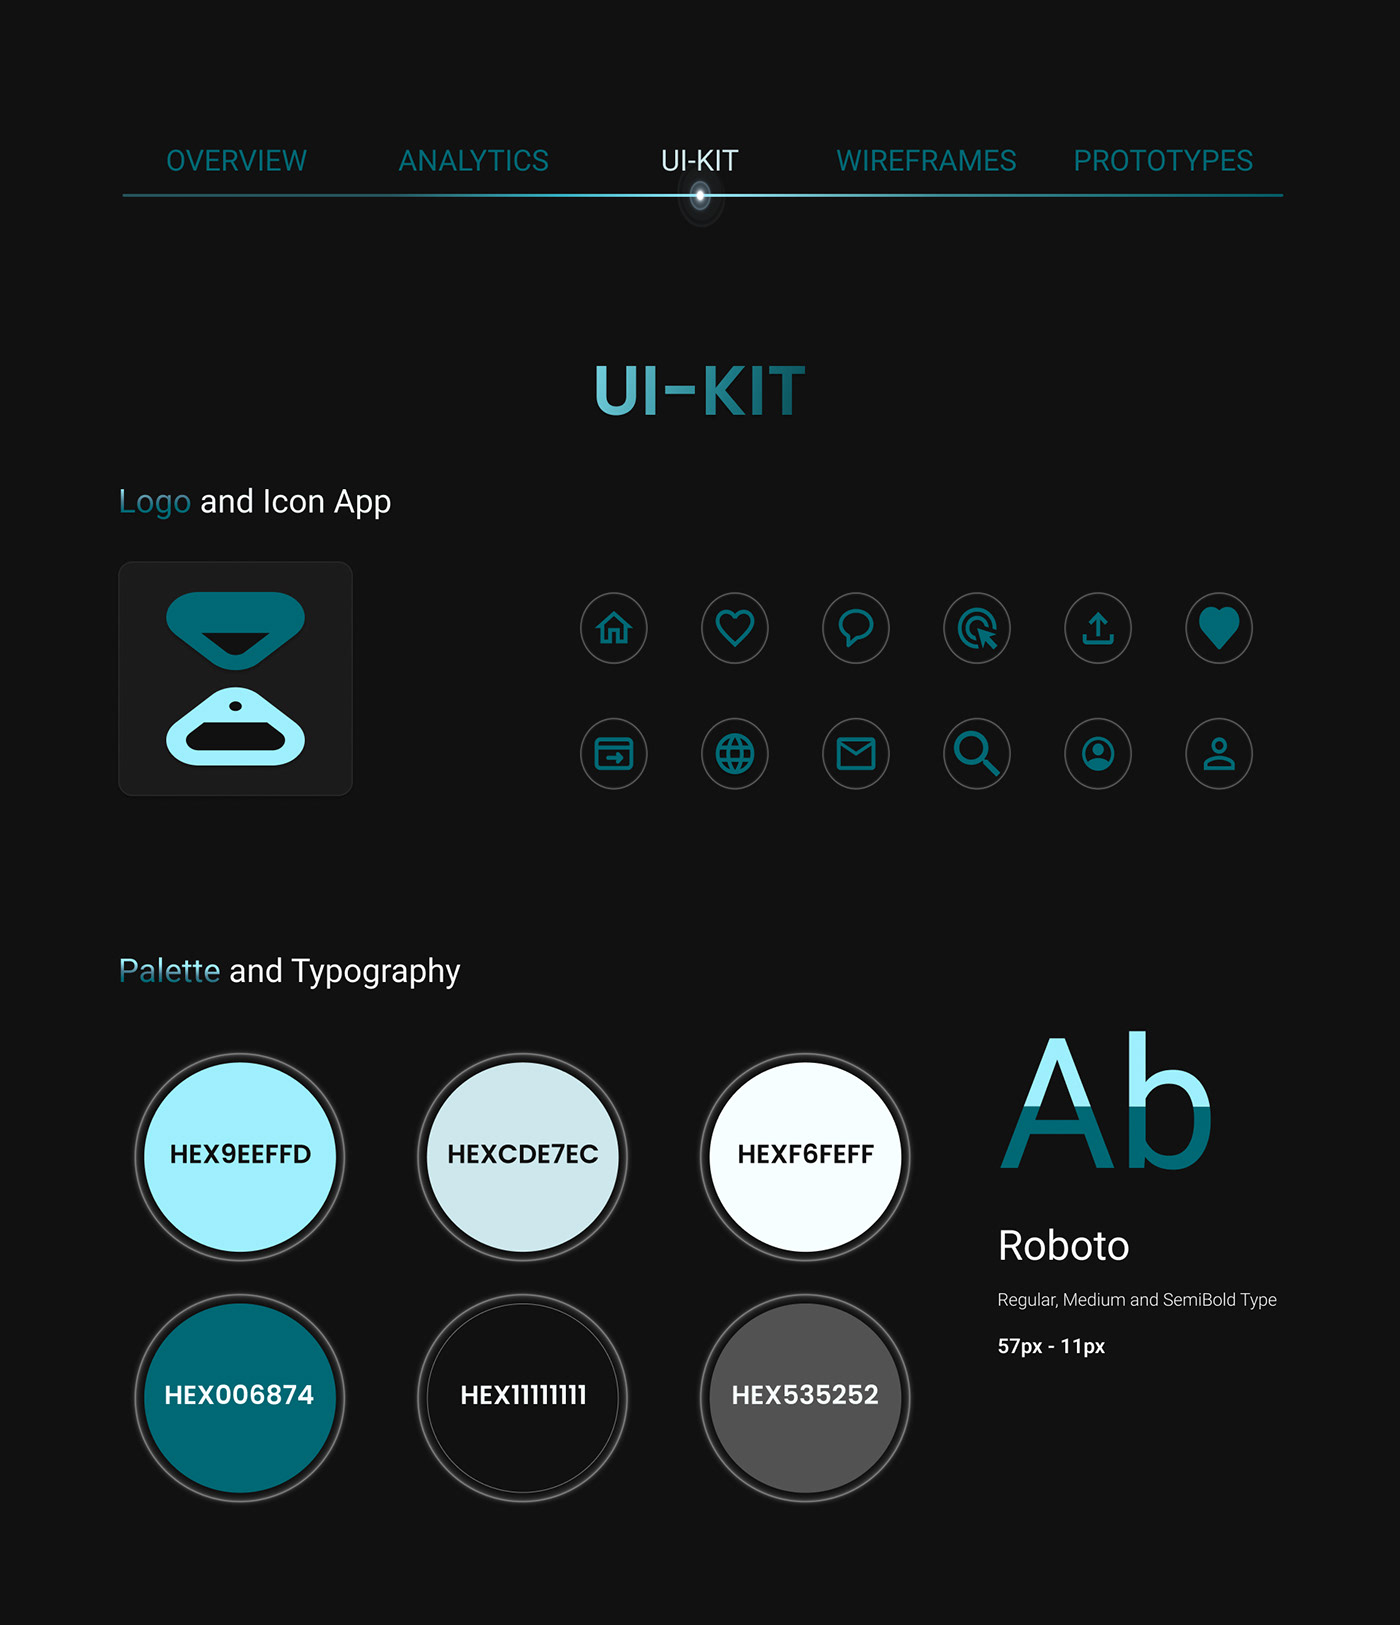 UX design UI UX design Mobile app Case Study app design UI/UX ui design ux/ui user interface UI disign